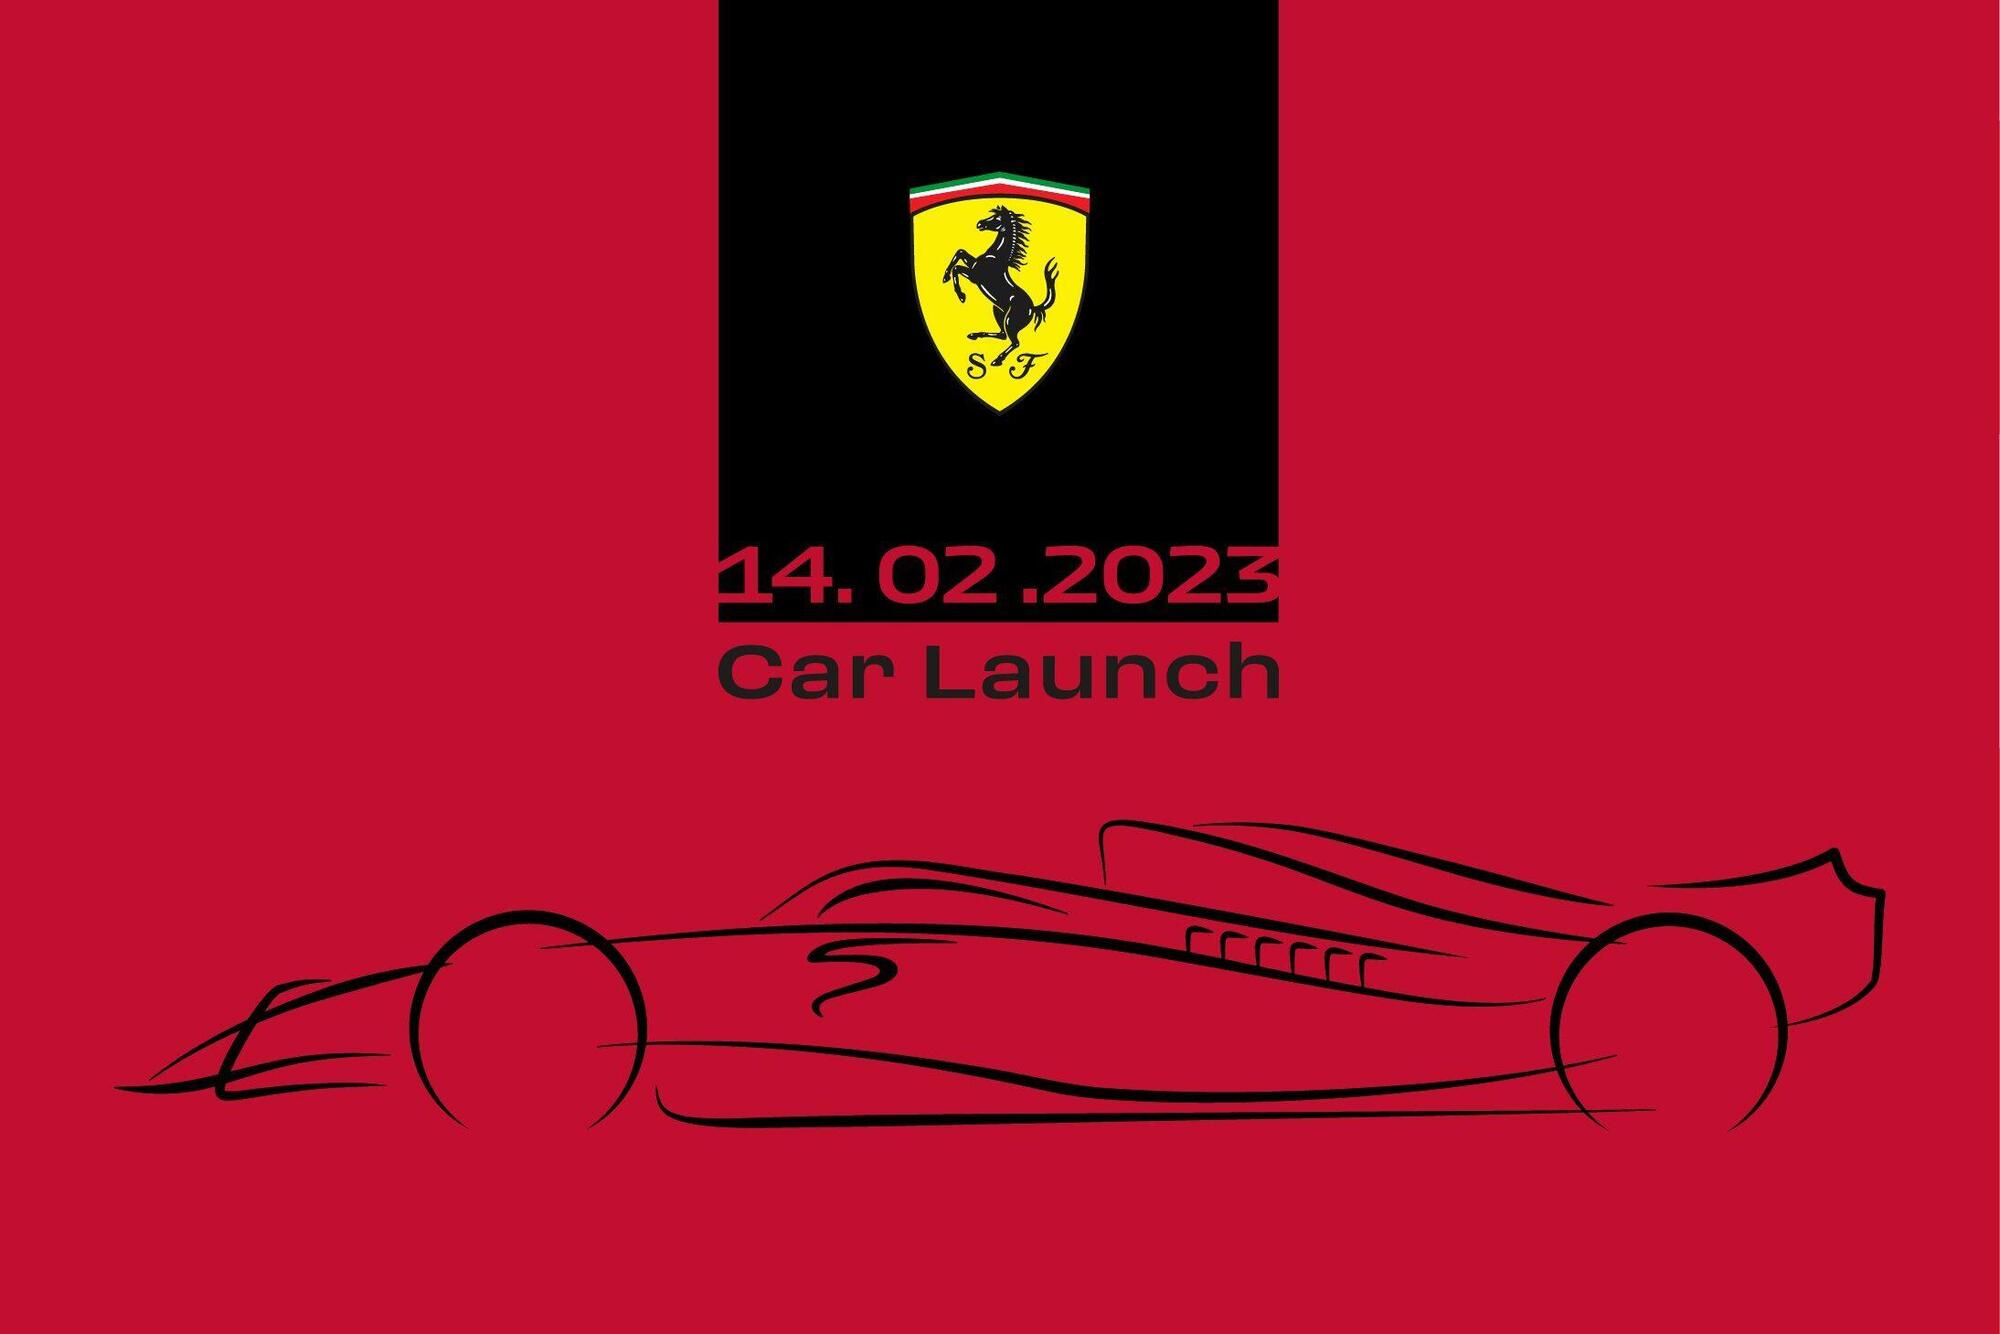 La locandina di presentazione della nuova Ferrari 